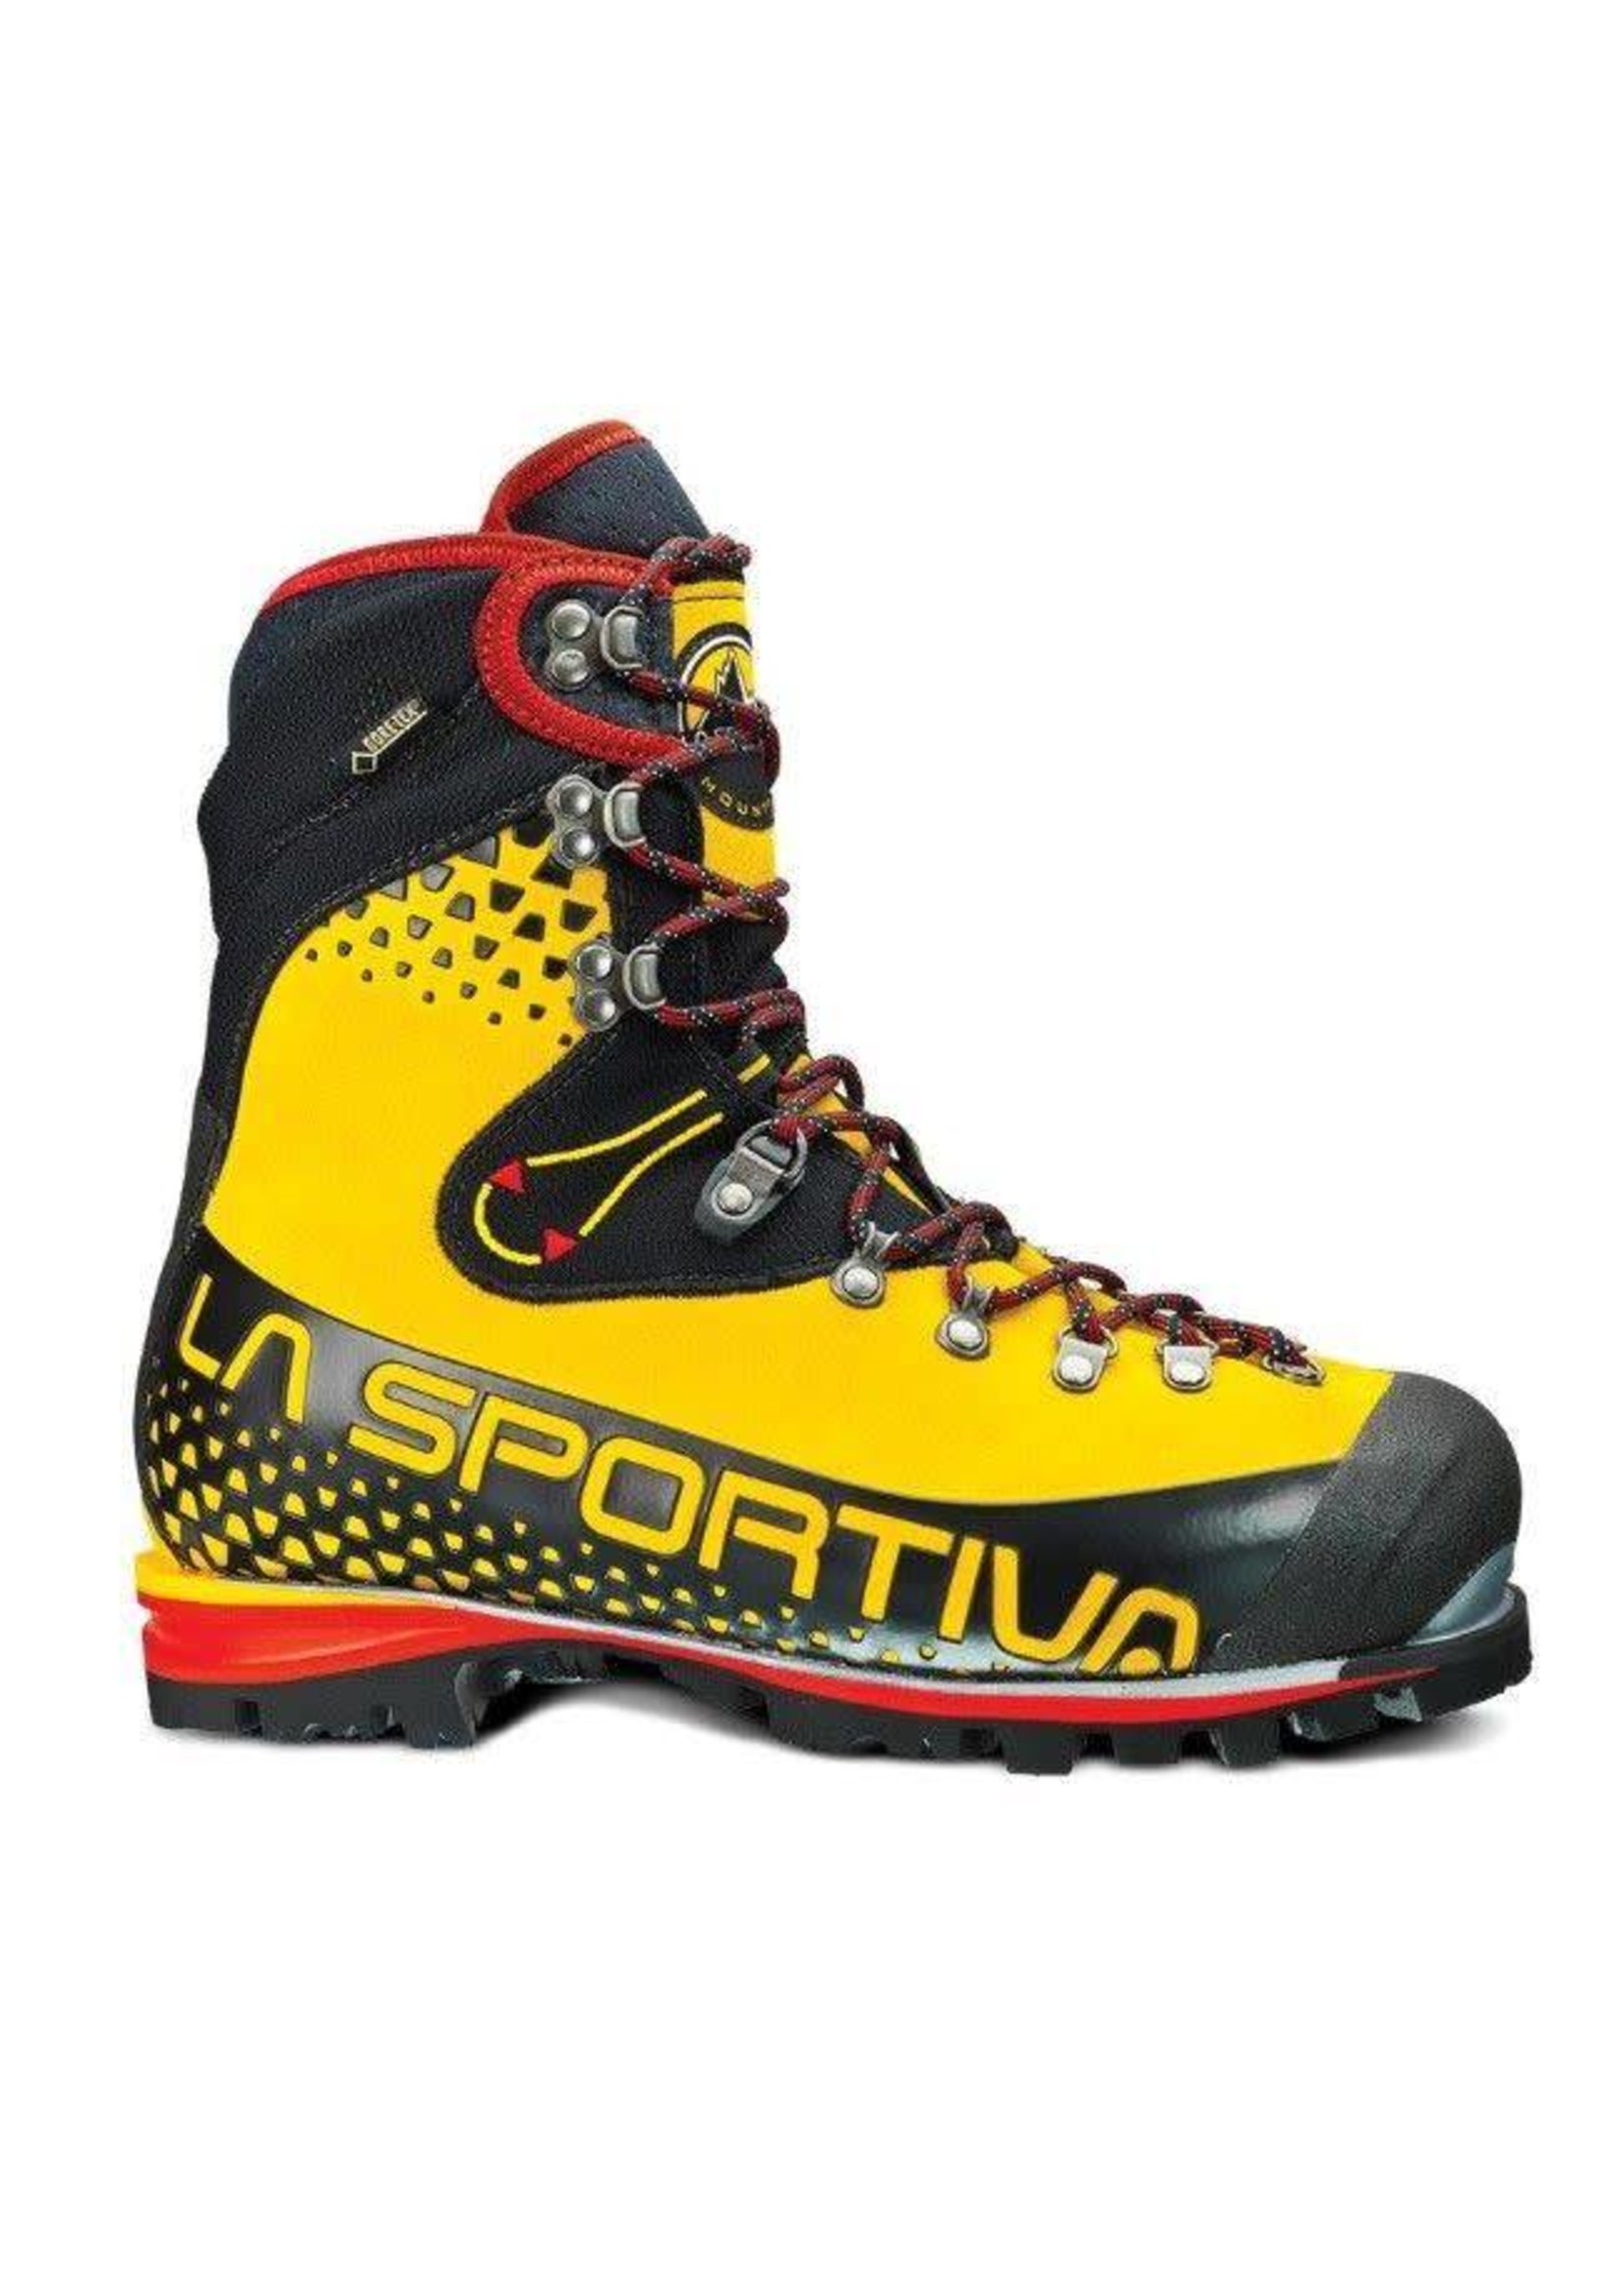 La Sportiva La Sportiva Nepal Cube GTX Boot - Men